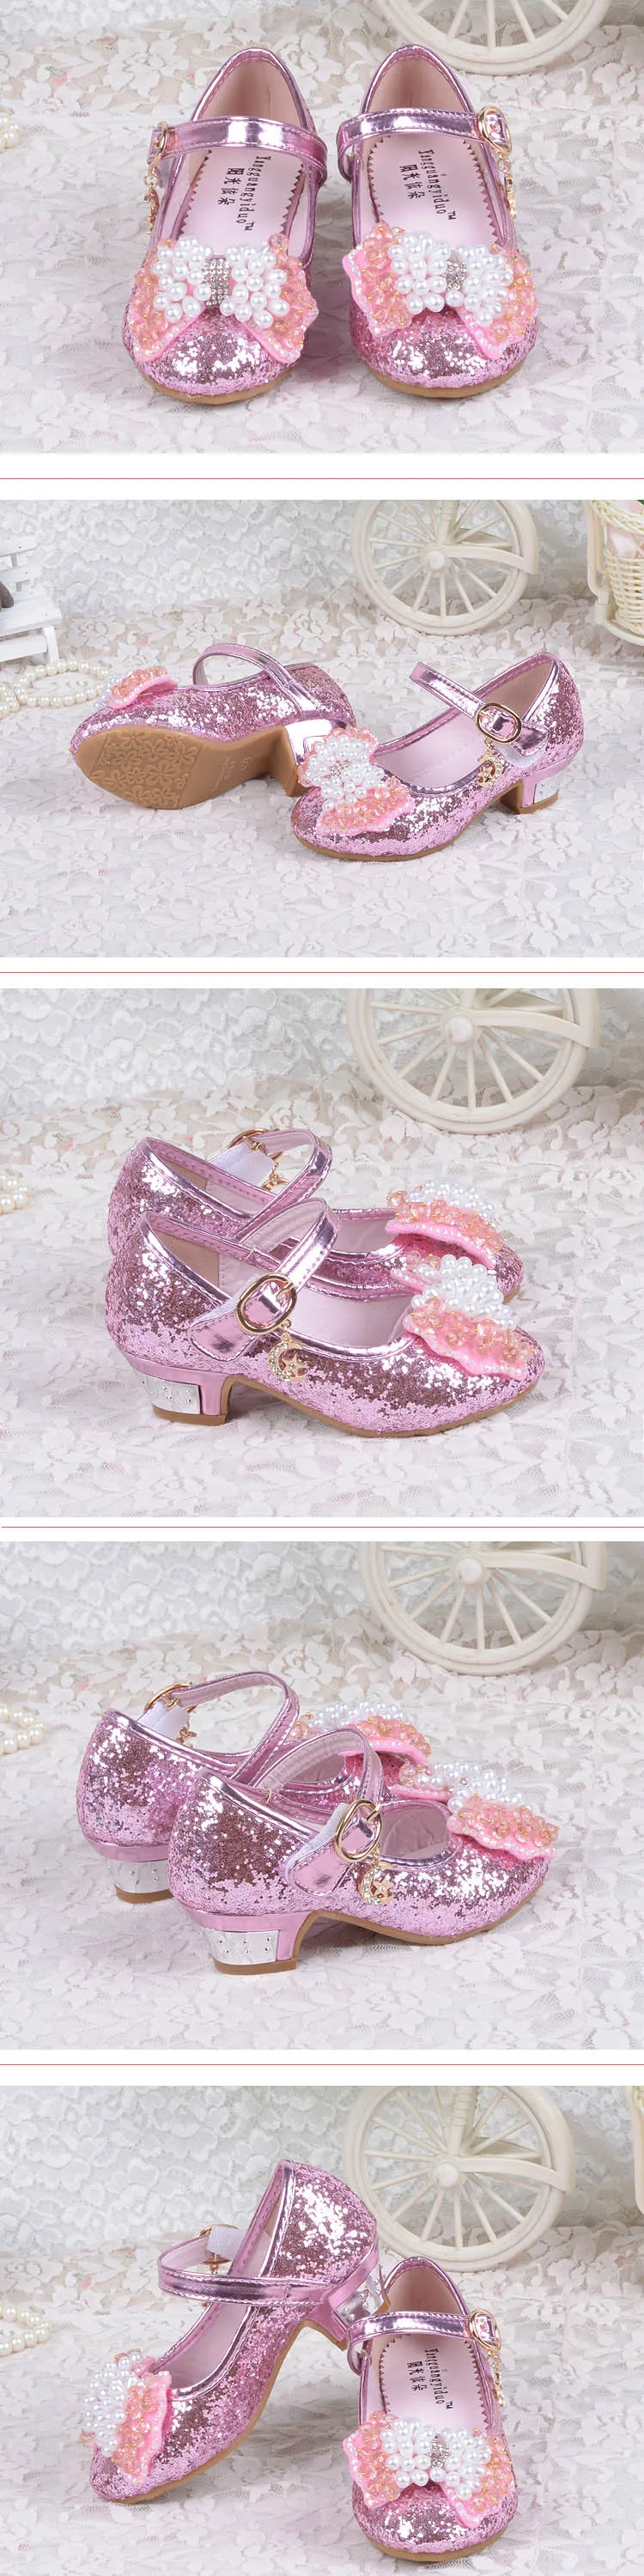 Серебристые туфли на высоком каблуке для детей Новые Девушки Принцесса обувь От 3 до 12 лет дети жемчуг лук галстук блесток Обувь для танцев розовый синий золото